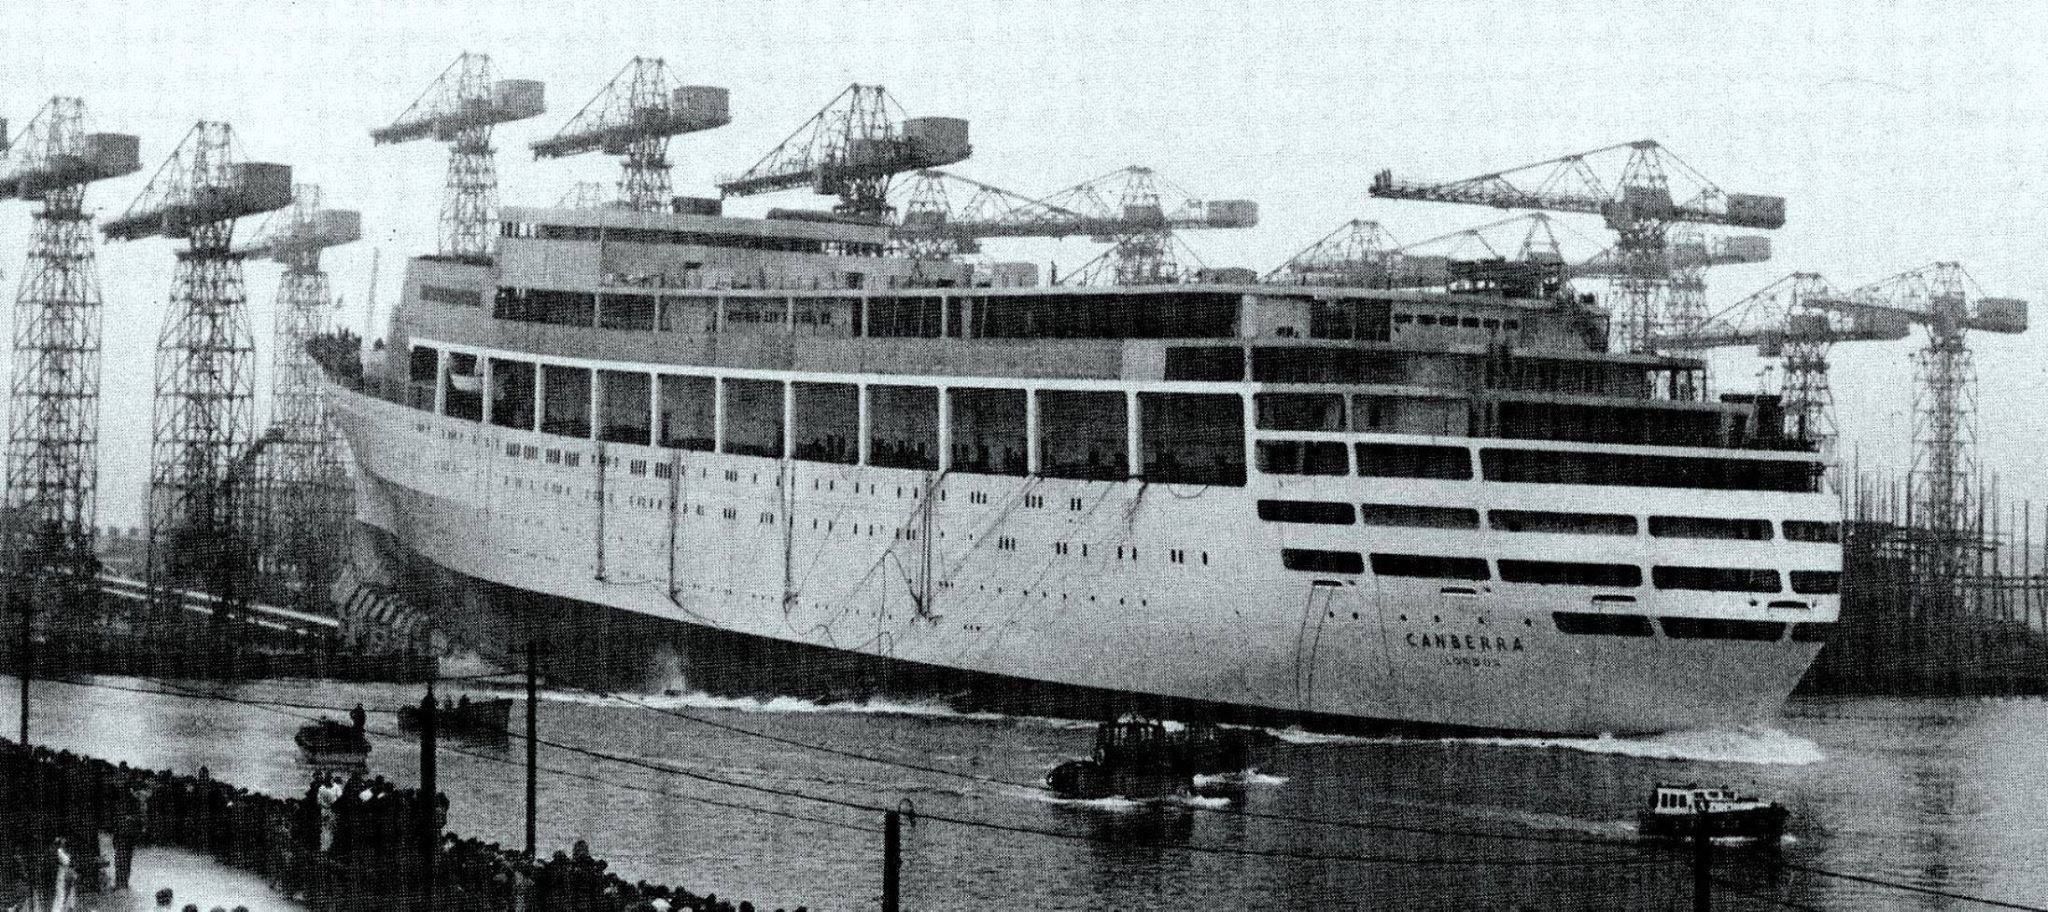 Canberra Cruiseship Odyssey